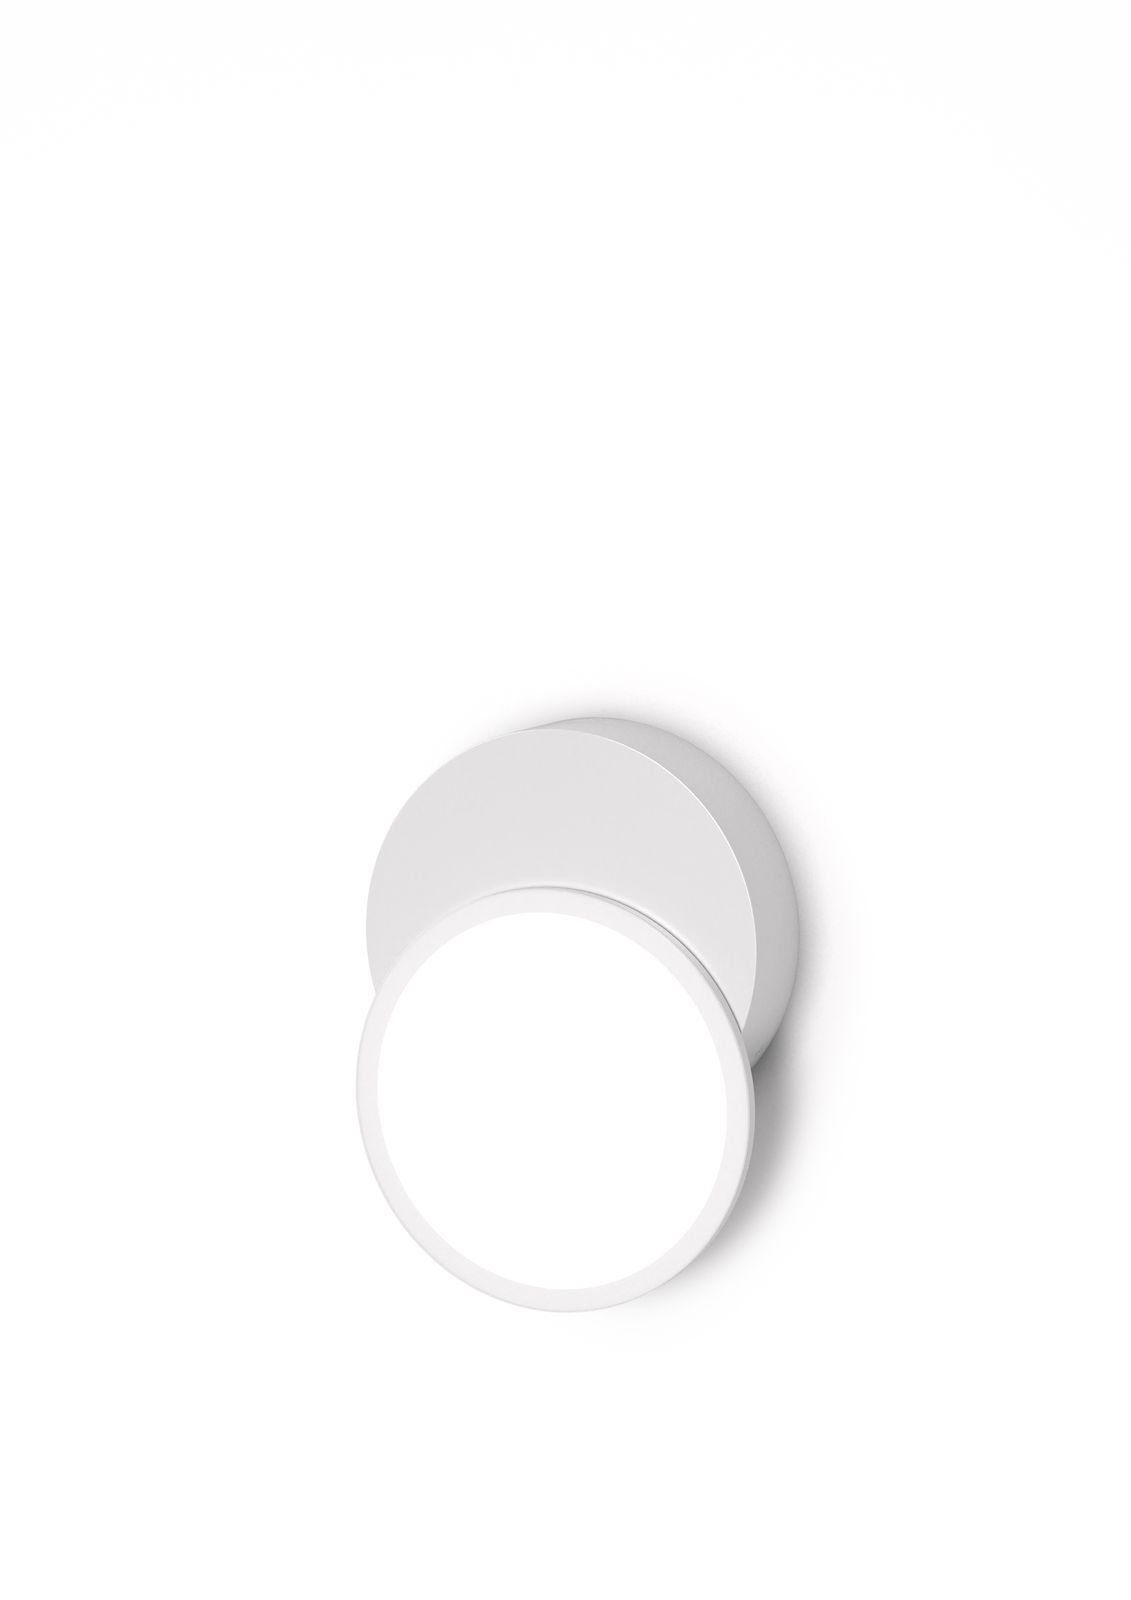 Stropná / nástenná lampa DOT 01, viac variantov - TUNTO Model: bílý rám a krycí část